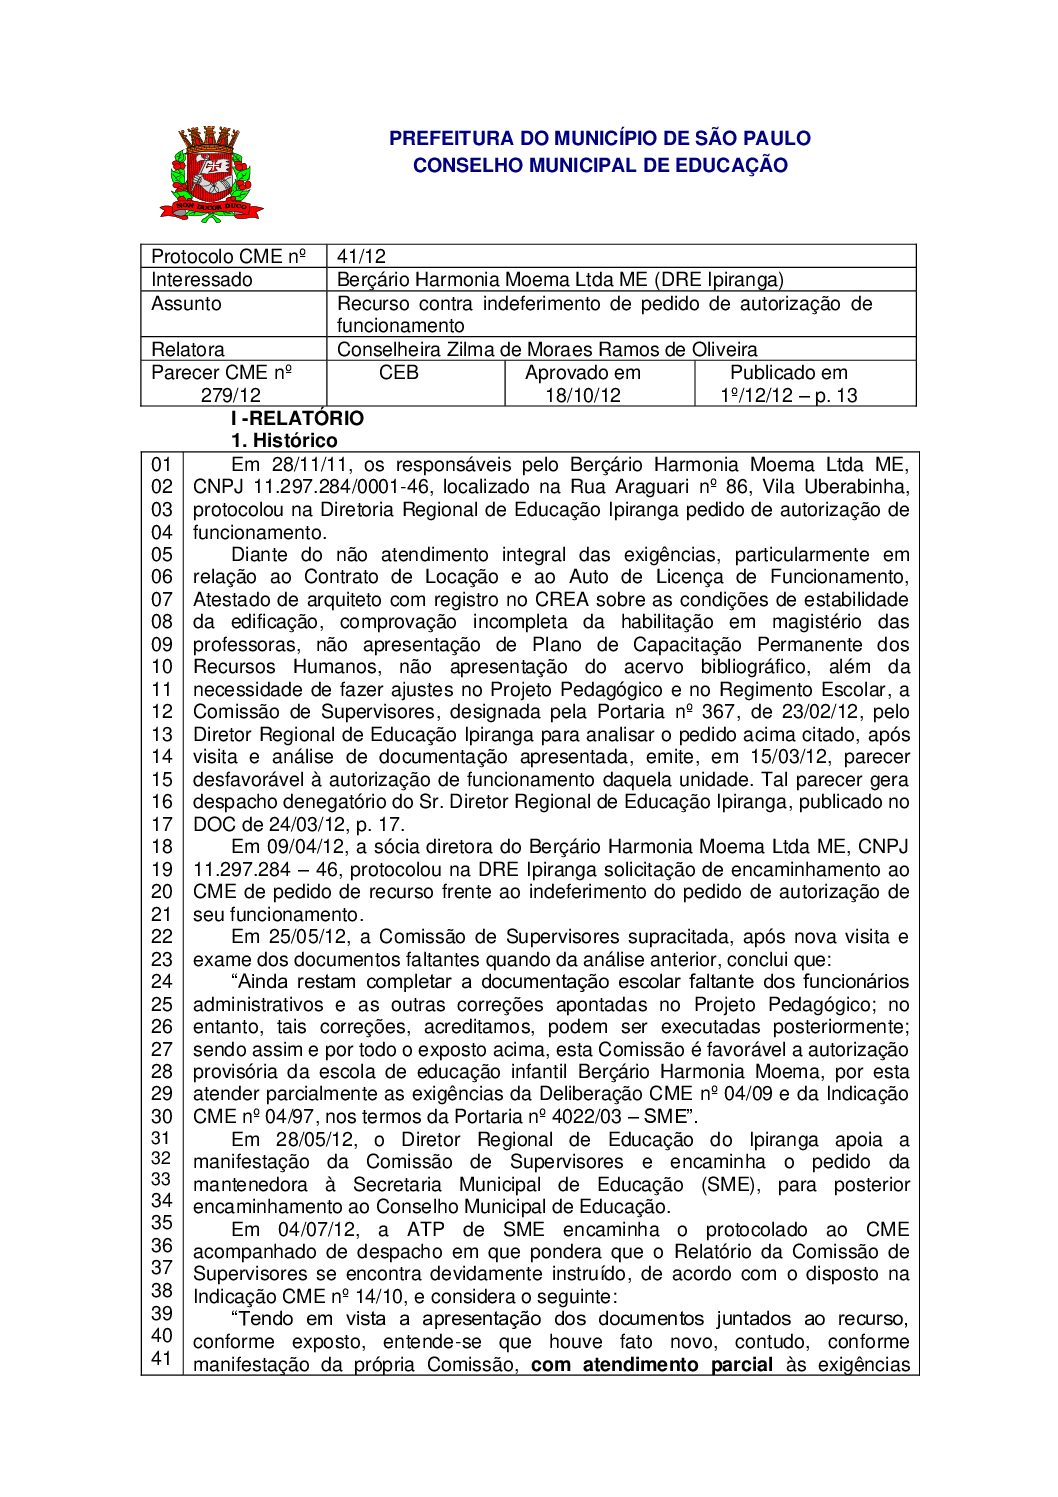 Parecer CME nº 279/2012 - Berçário Harmonia Moema Ltda ME (DRE Ipiranga) - Recurso contra indeferimento de pedido de autorização de funcionamento 